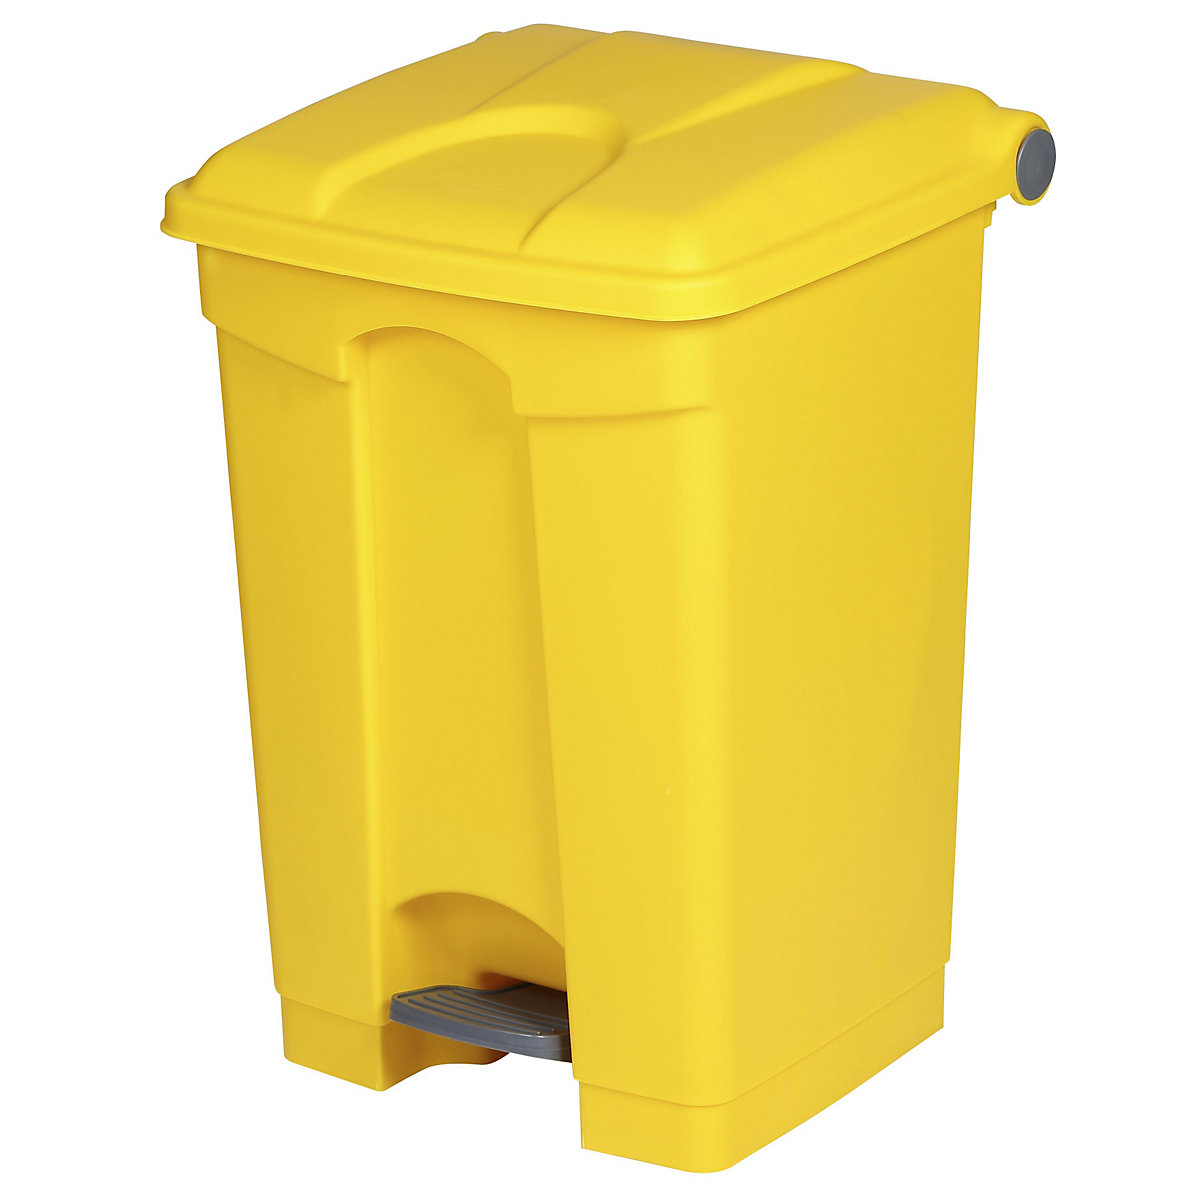 EUROKRAFTbasic – Nádoba na odpad s pedálem, objem 45 l, š x v x h 410 x 600 x 400 mm, žlutá